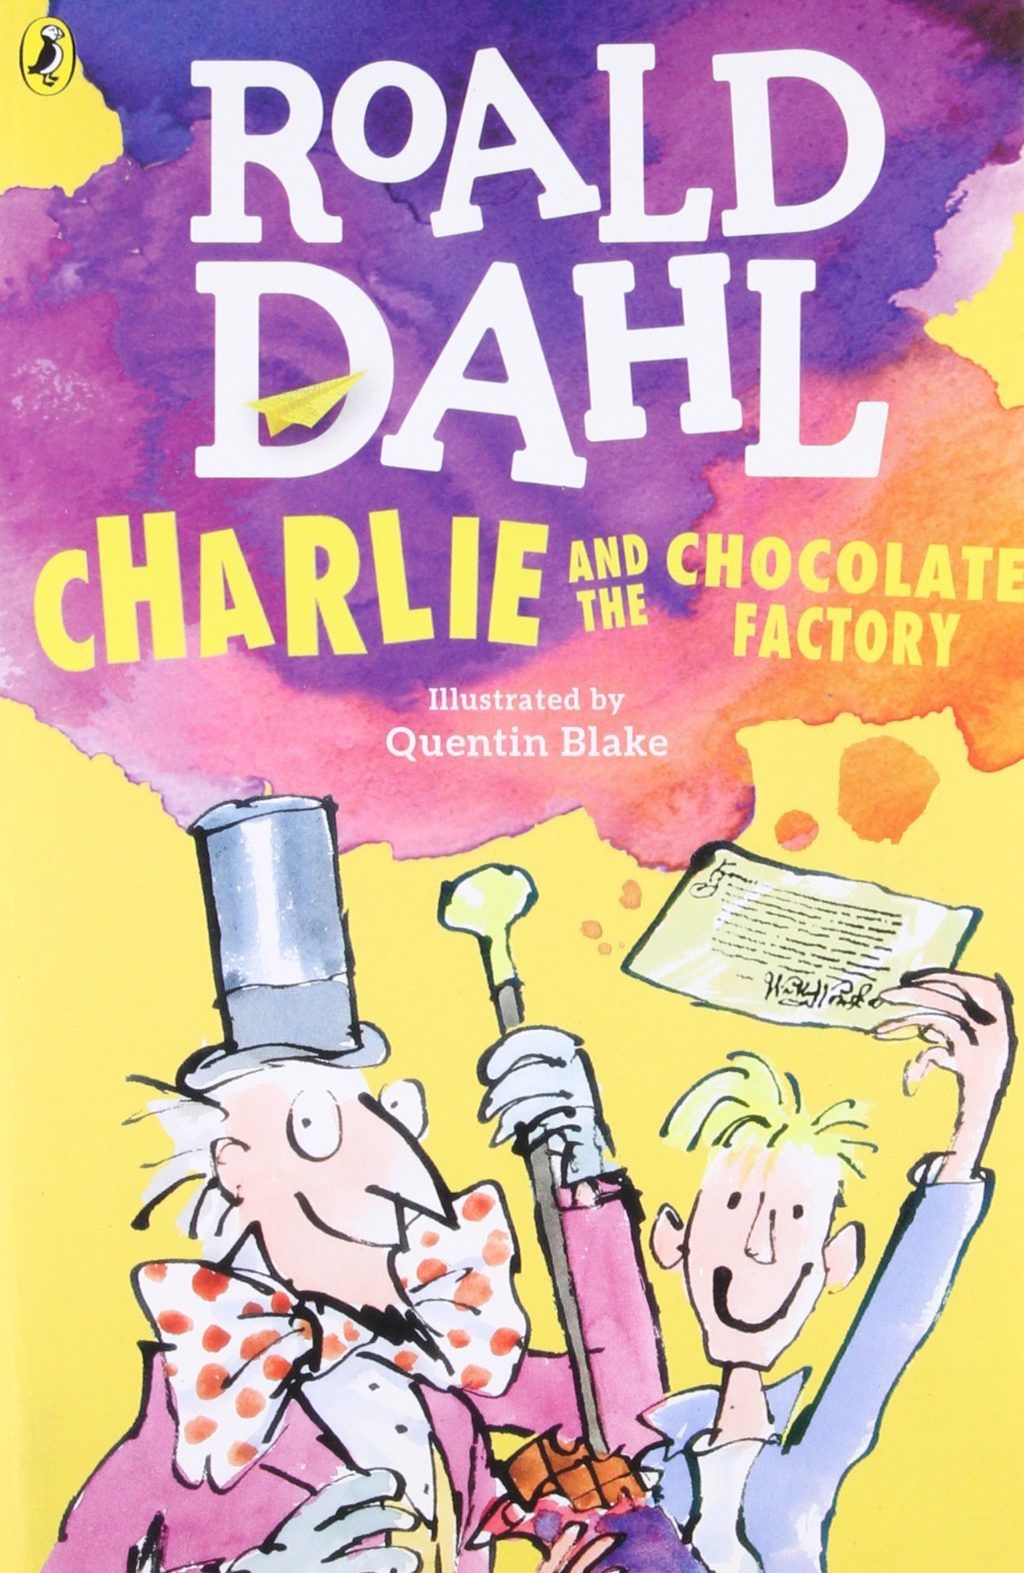 Charlie i tvornica čokolade Roald Dahl šali se iz djece